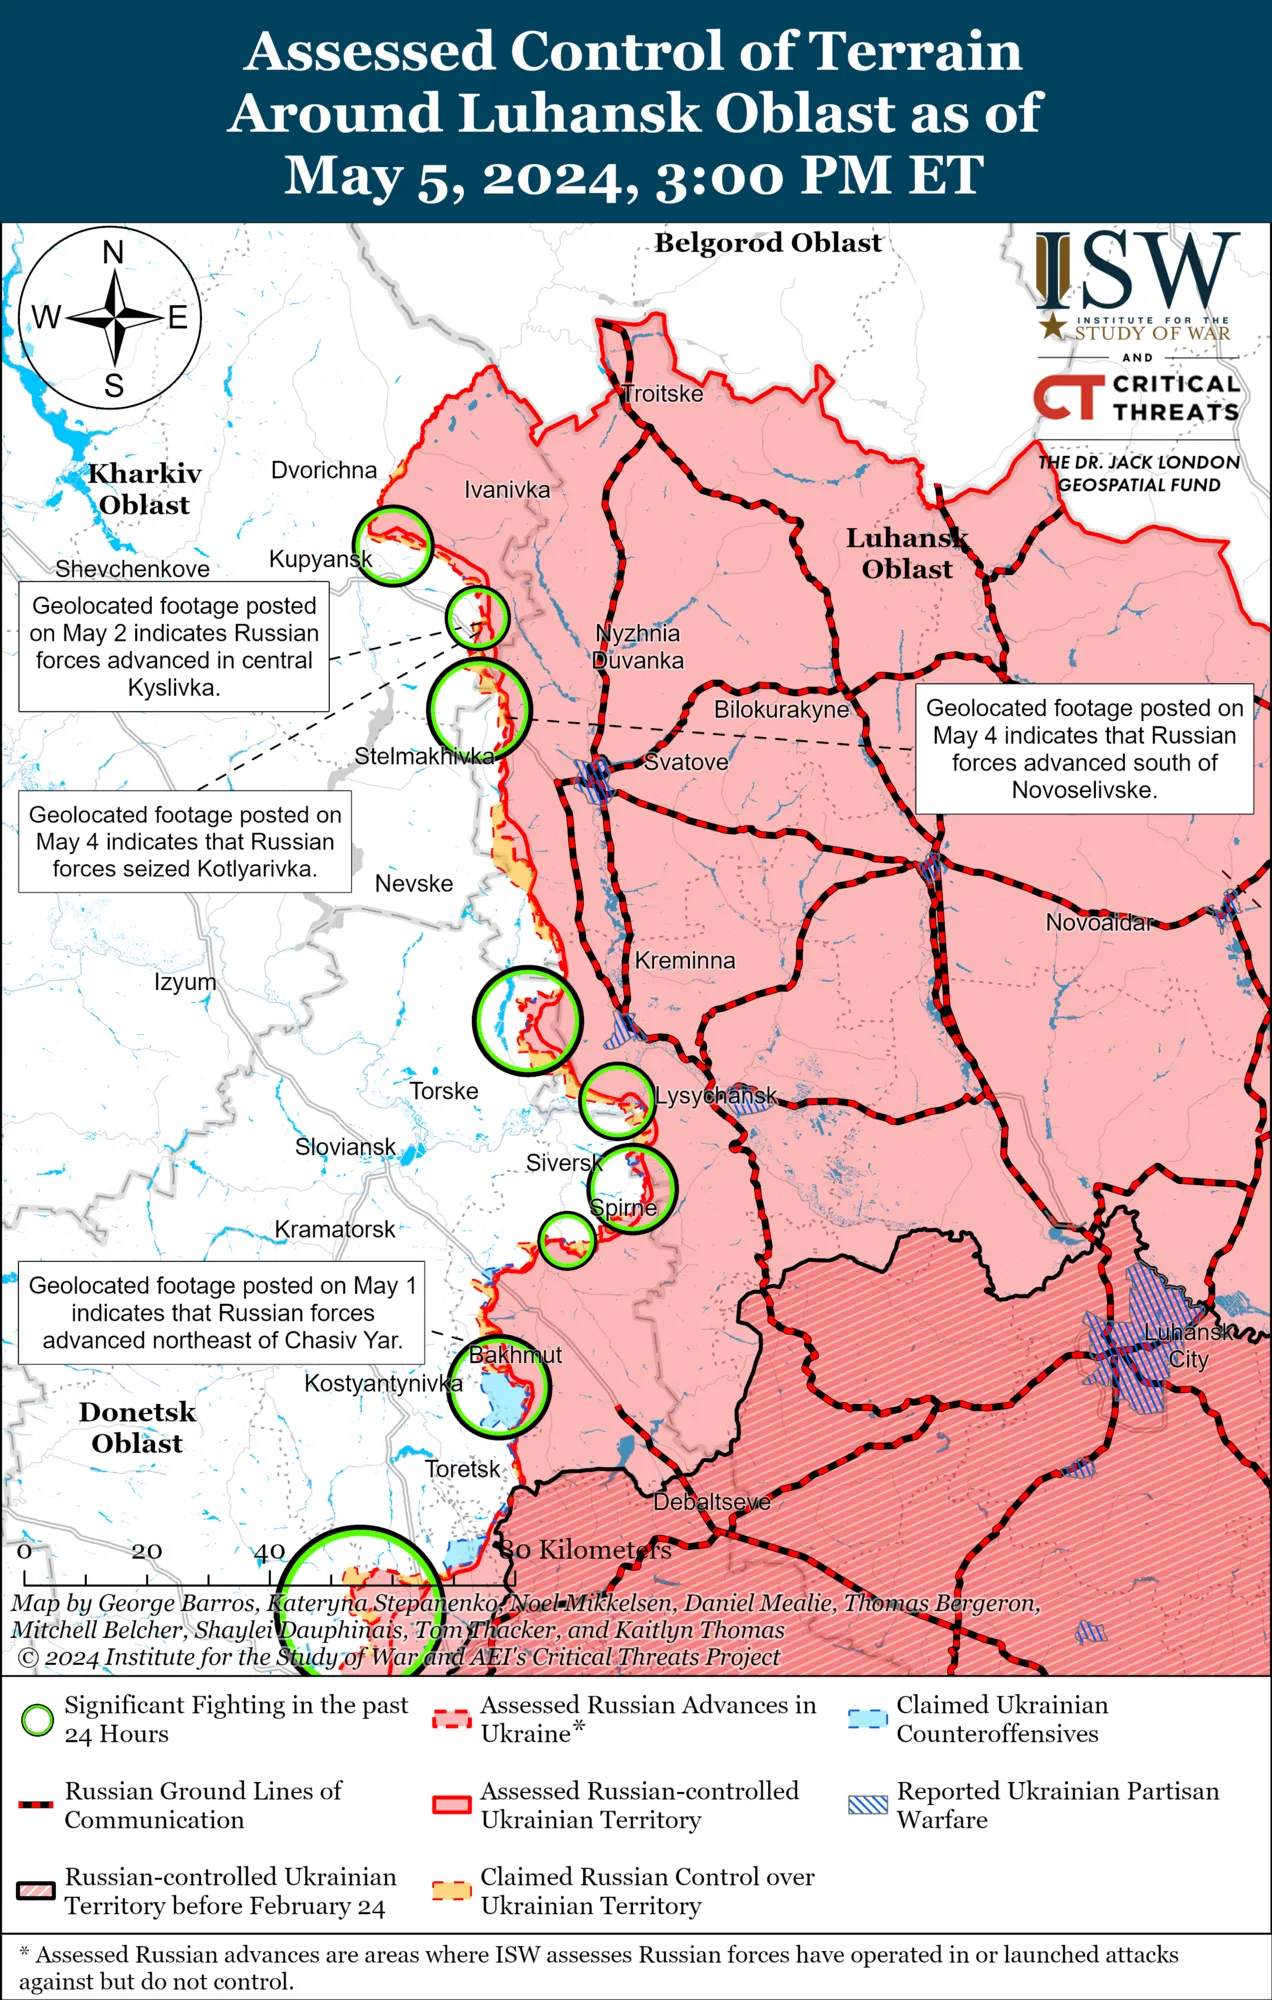 Россия усилила удары по приграничным территориям Украины: в ISW оценили, пойдет ли враг в наступление на Сумы и Харьков